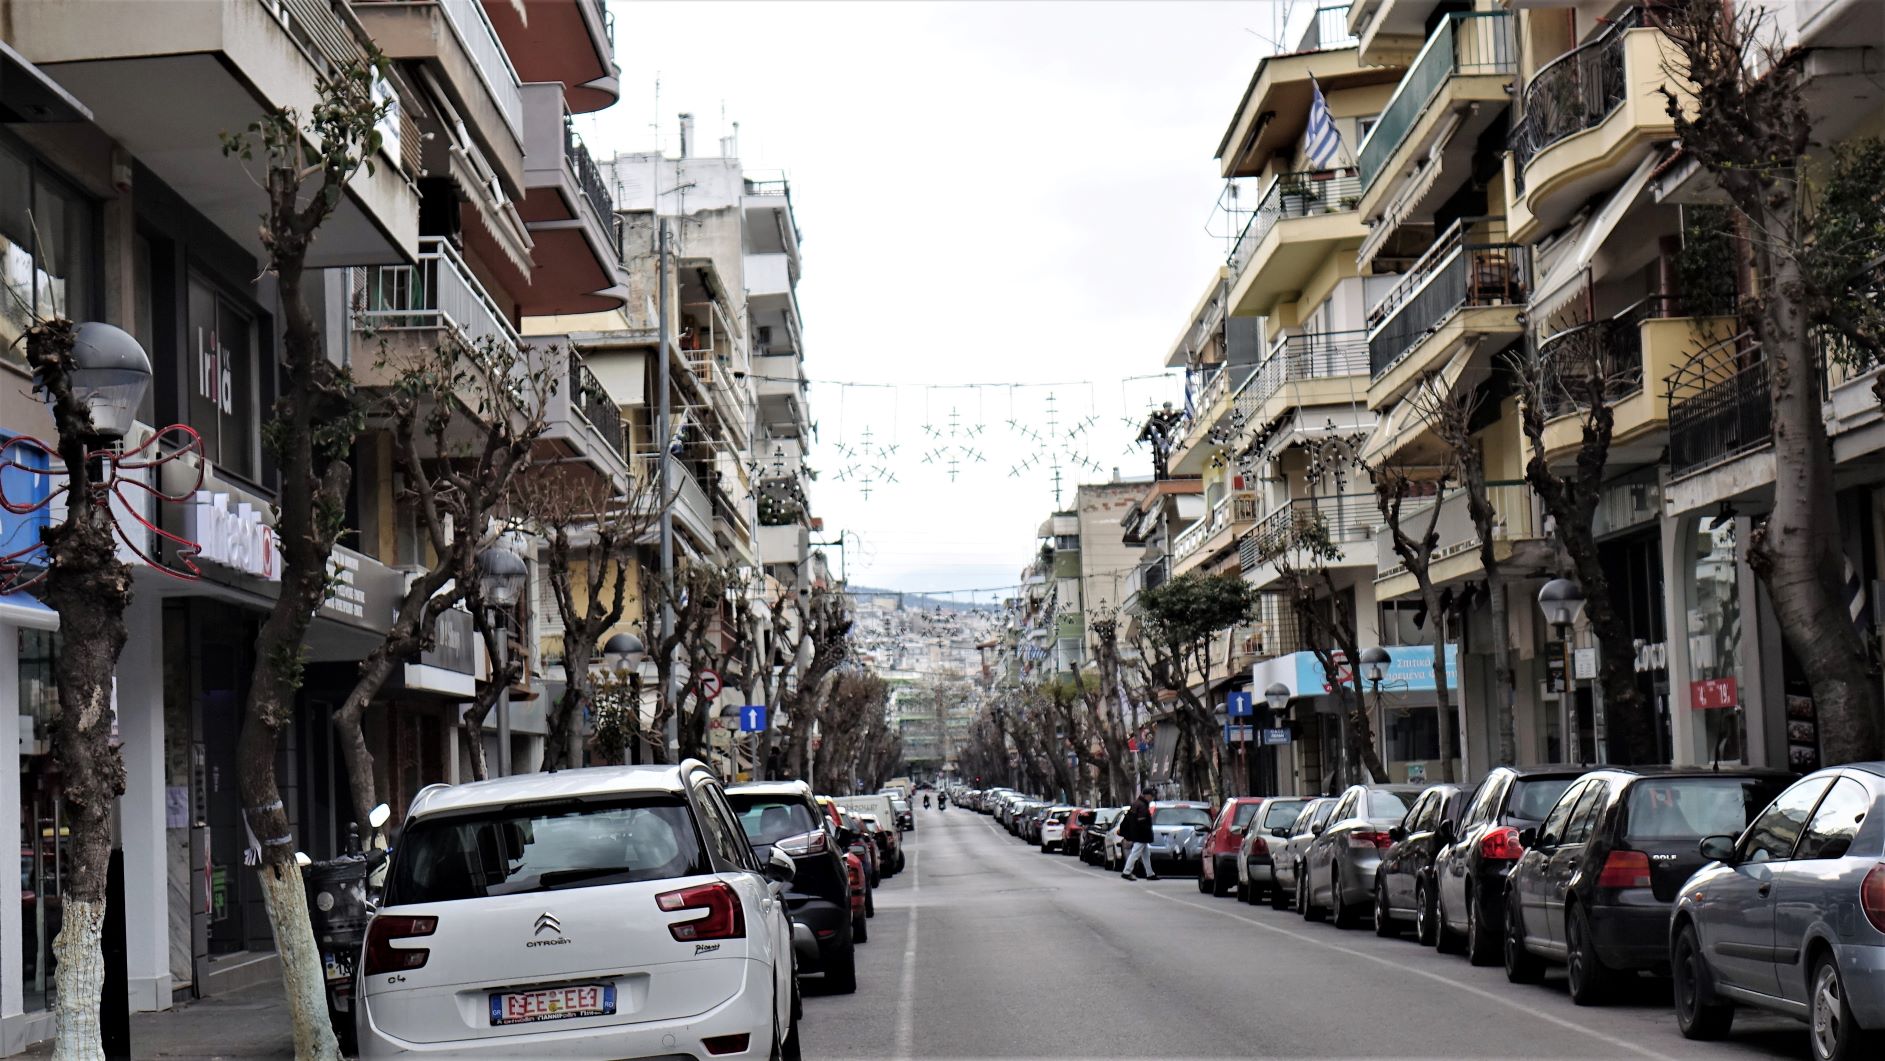 25η Μαρτίου 2020|Αμπελόκηποι Θεσσαλονίκης